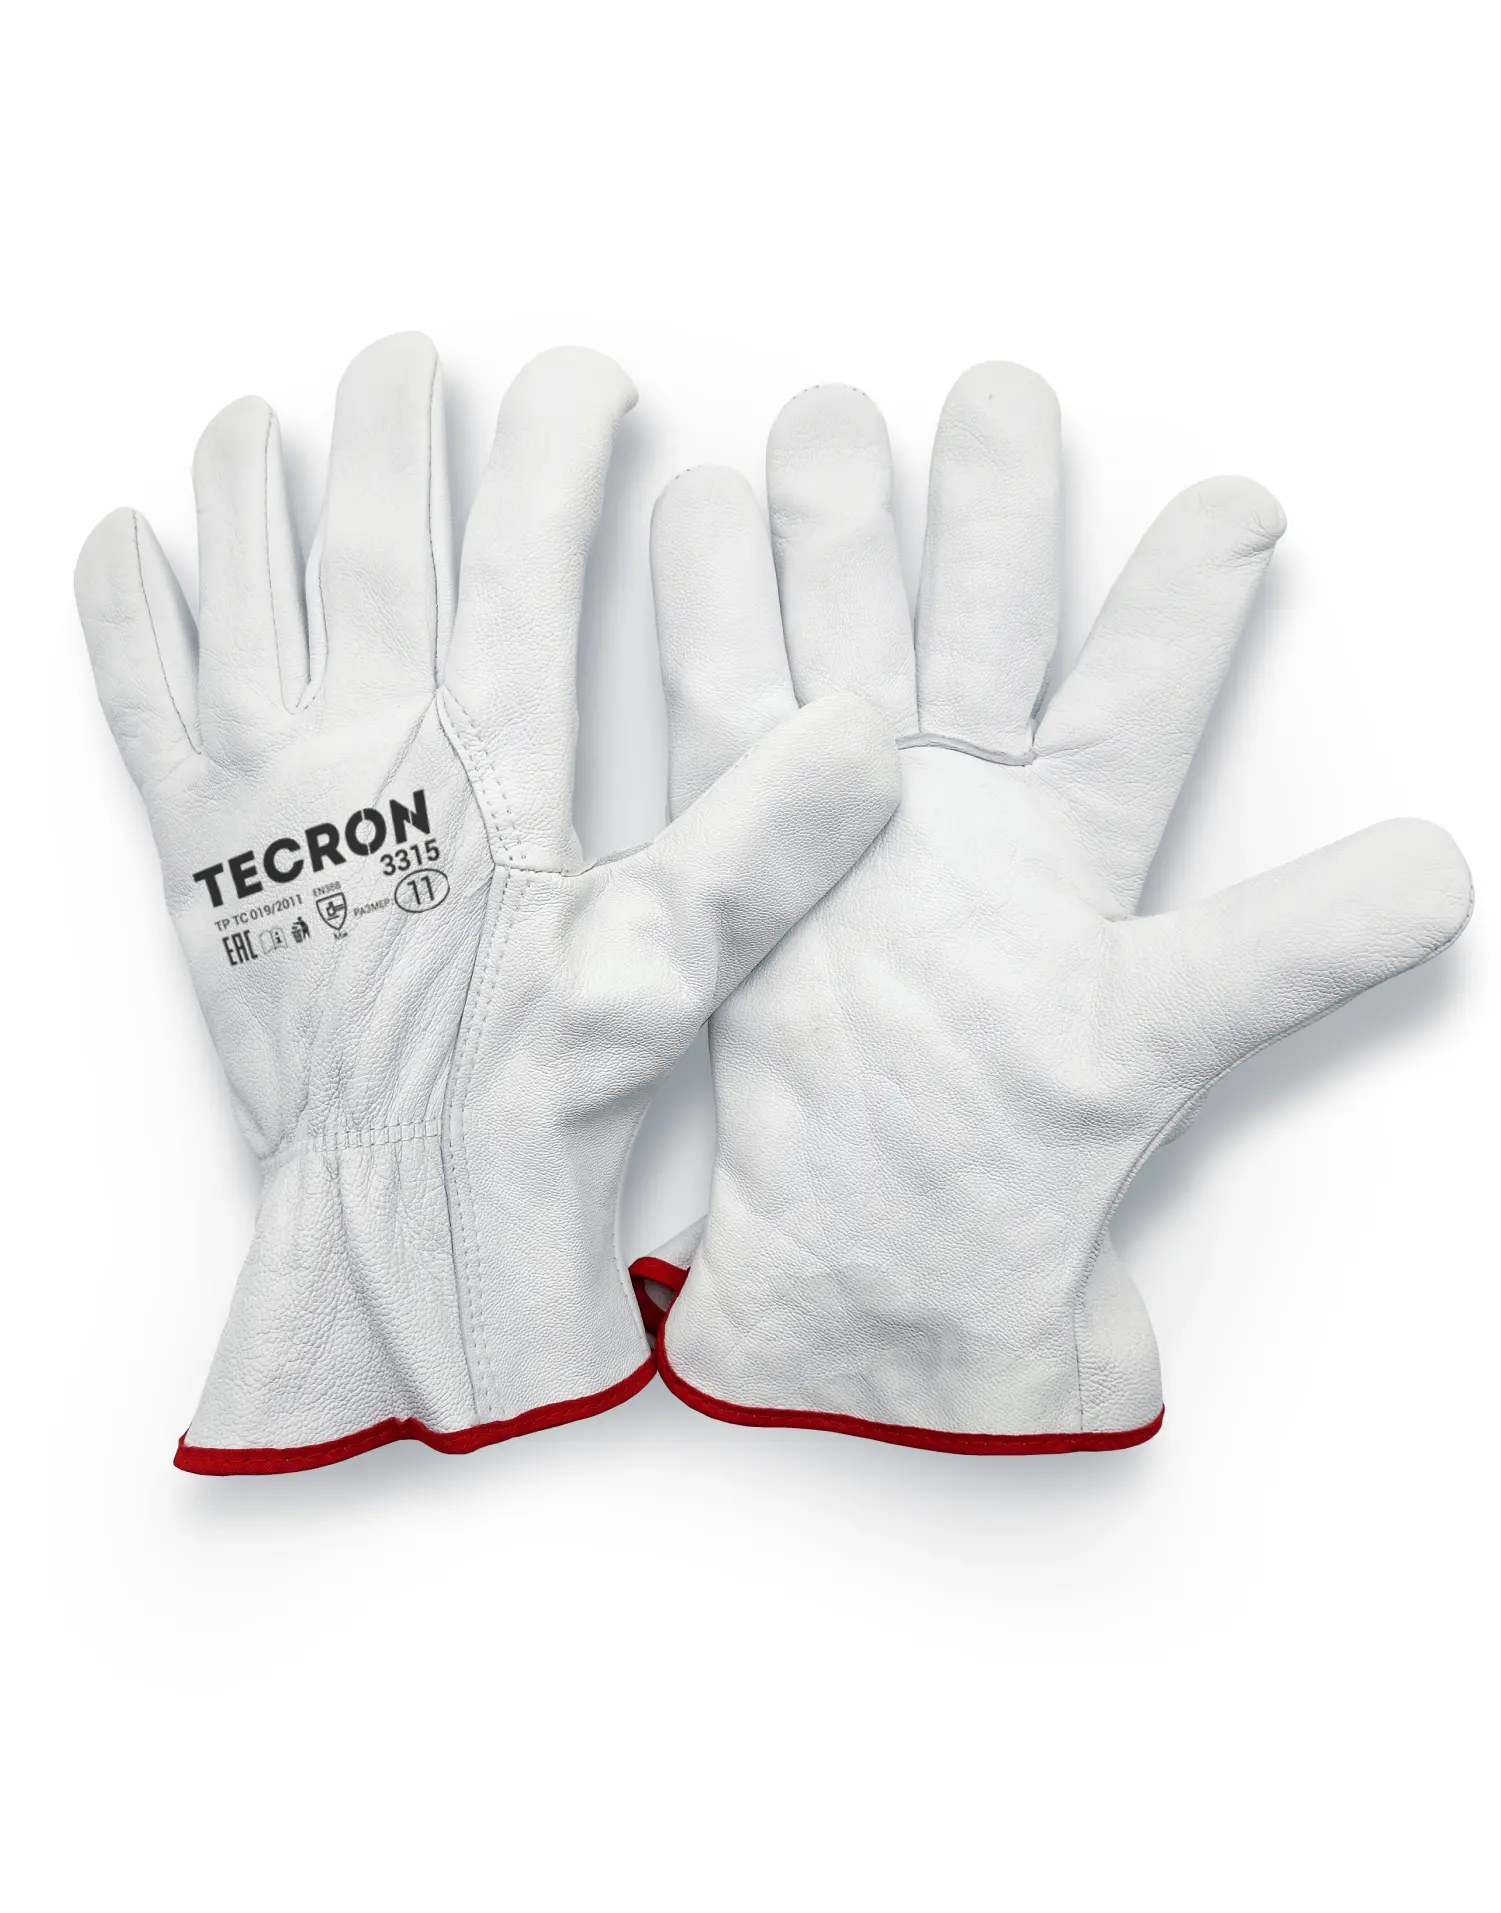 TECRON™ 3315 leather gloves